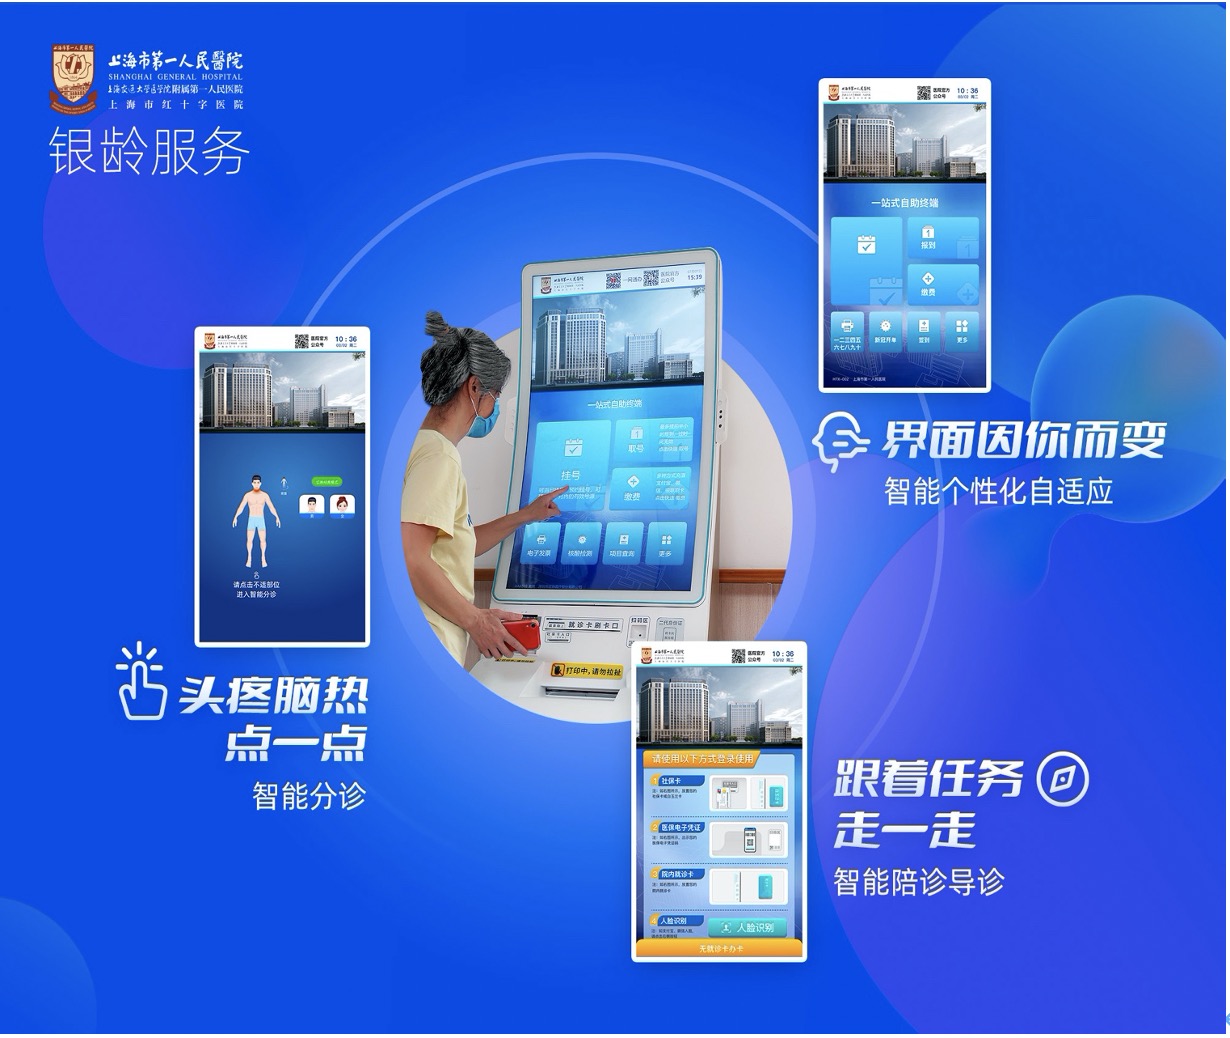 上海市第一人民医院对“自助服务综合平台”进行“适老化”改造升级。本文图均为上海市第一人民医院 供图